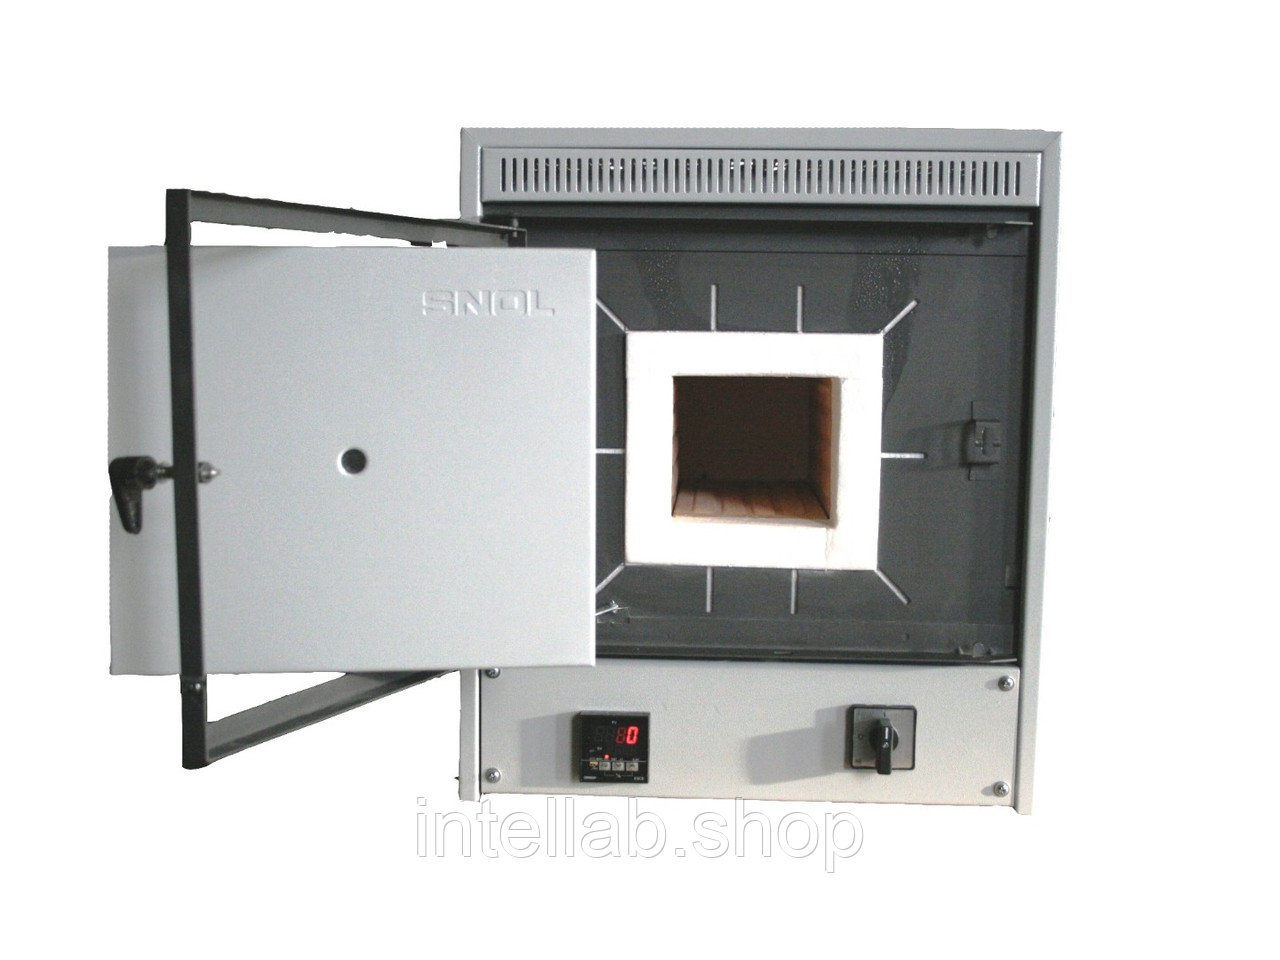 Электропечь сопротивления высокотемпературная лабораторная, тип SNOL, модель 4/1300 (LSC 01, 1300ºC, код: